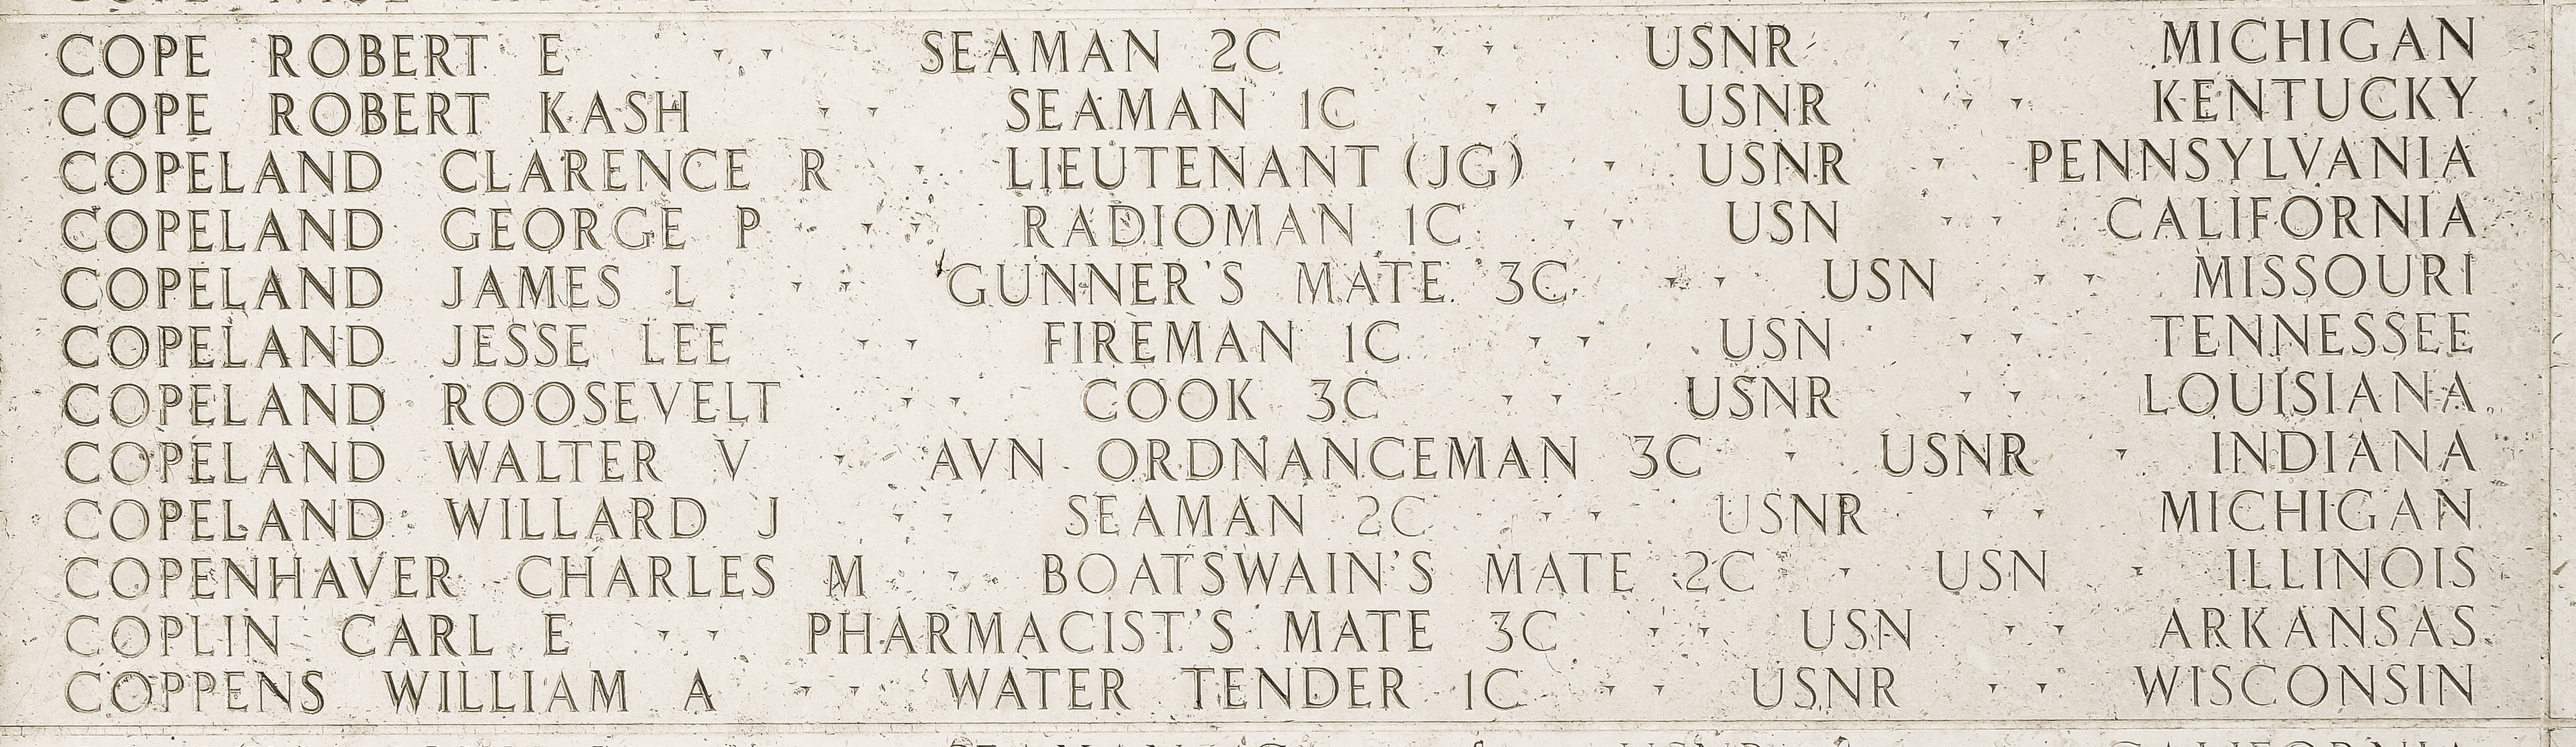 Robert E. Cope, Seaman Second Class